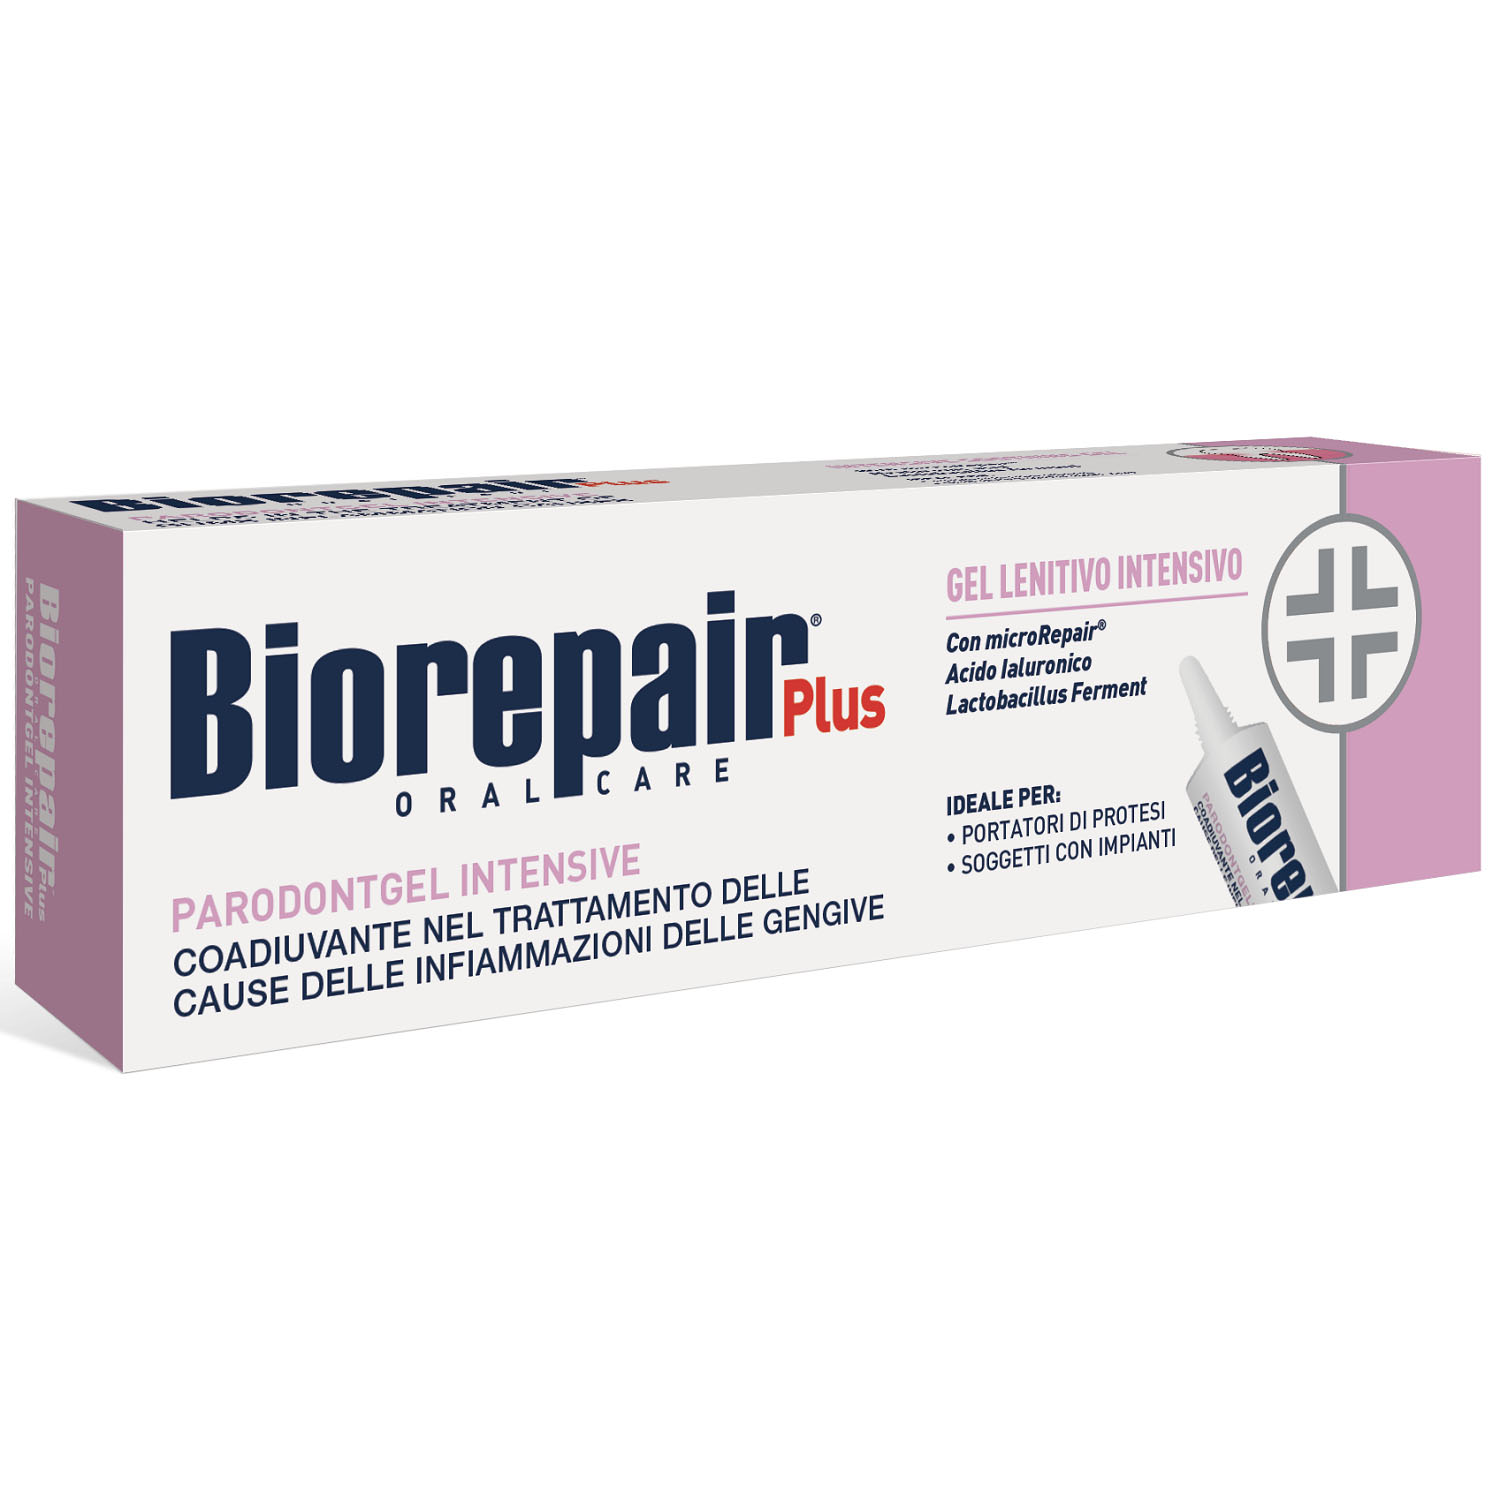 Biorepair Успокаивающий гель для десен Biorepair Plus Parodontgel Intensive 12+, 20 мл (Biorepair, Отбеливание и лечение) лечение молитвами и заговорами